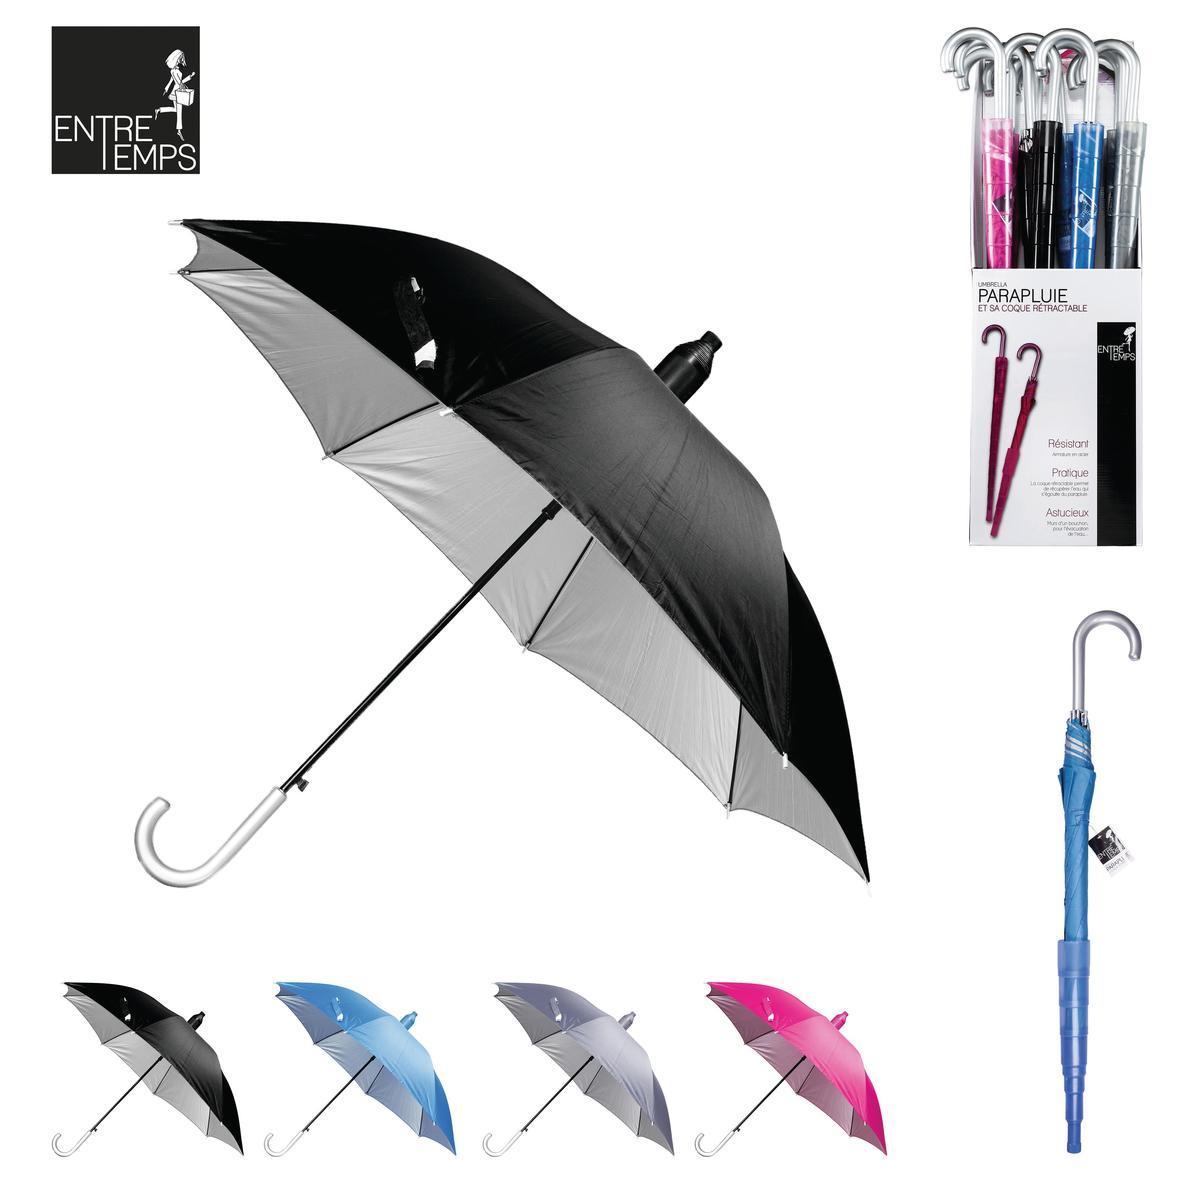 Parapluie avec coque rétractable